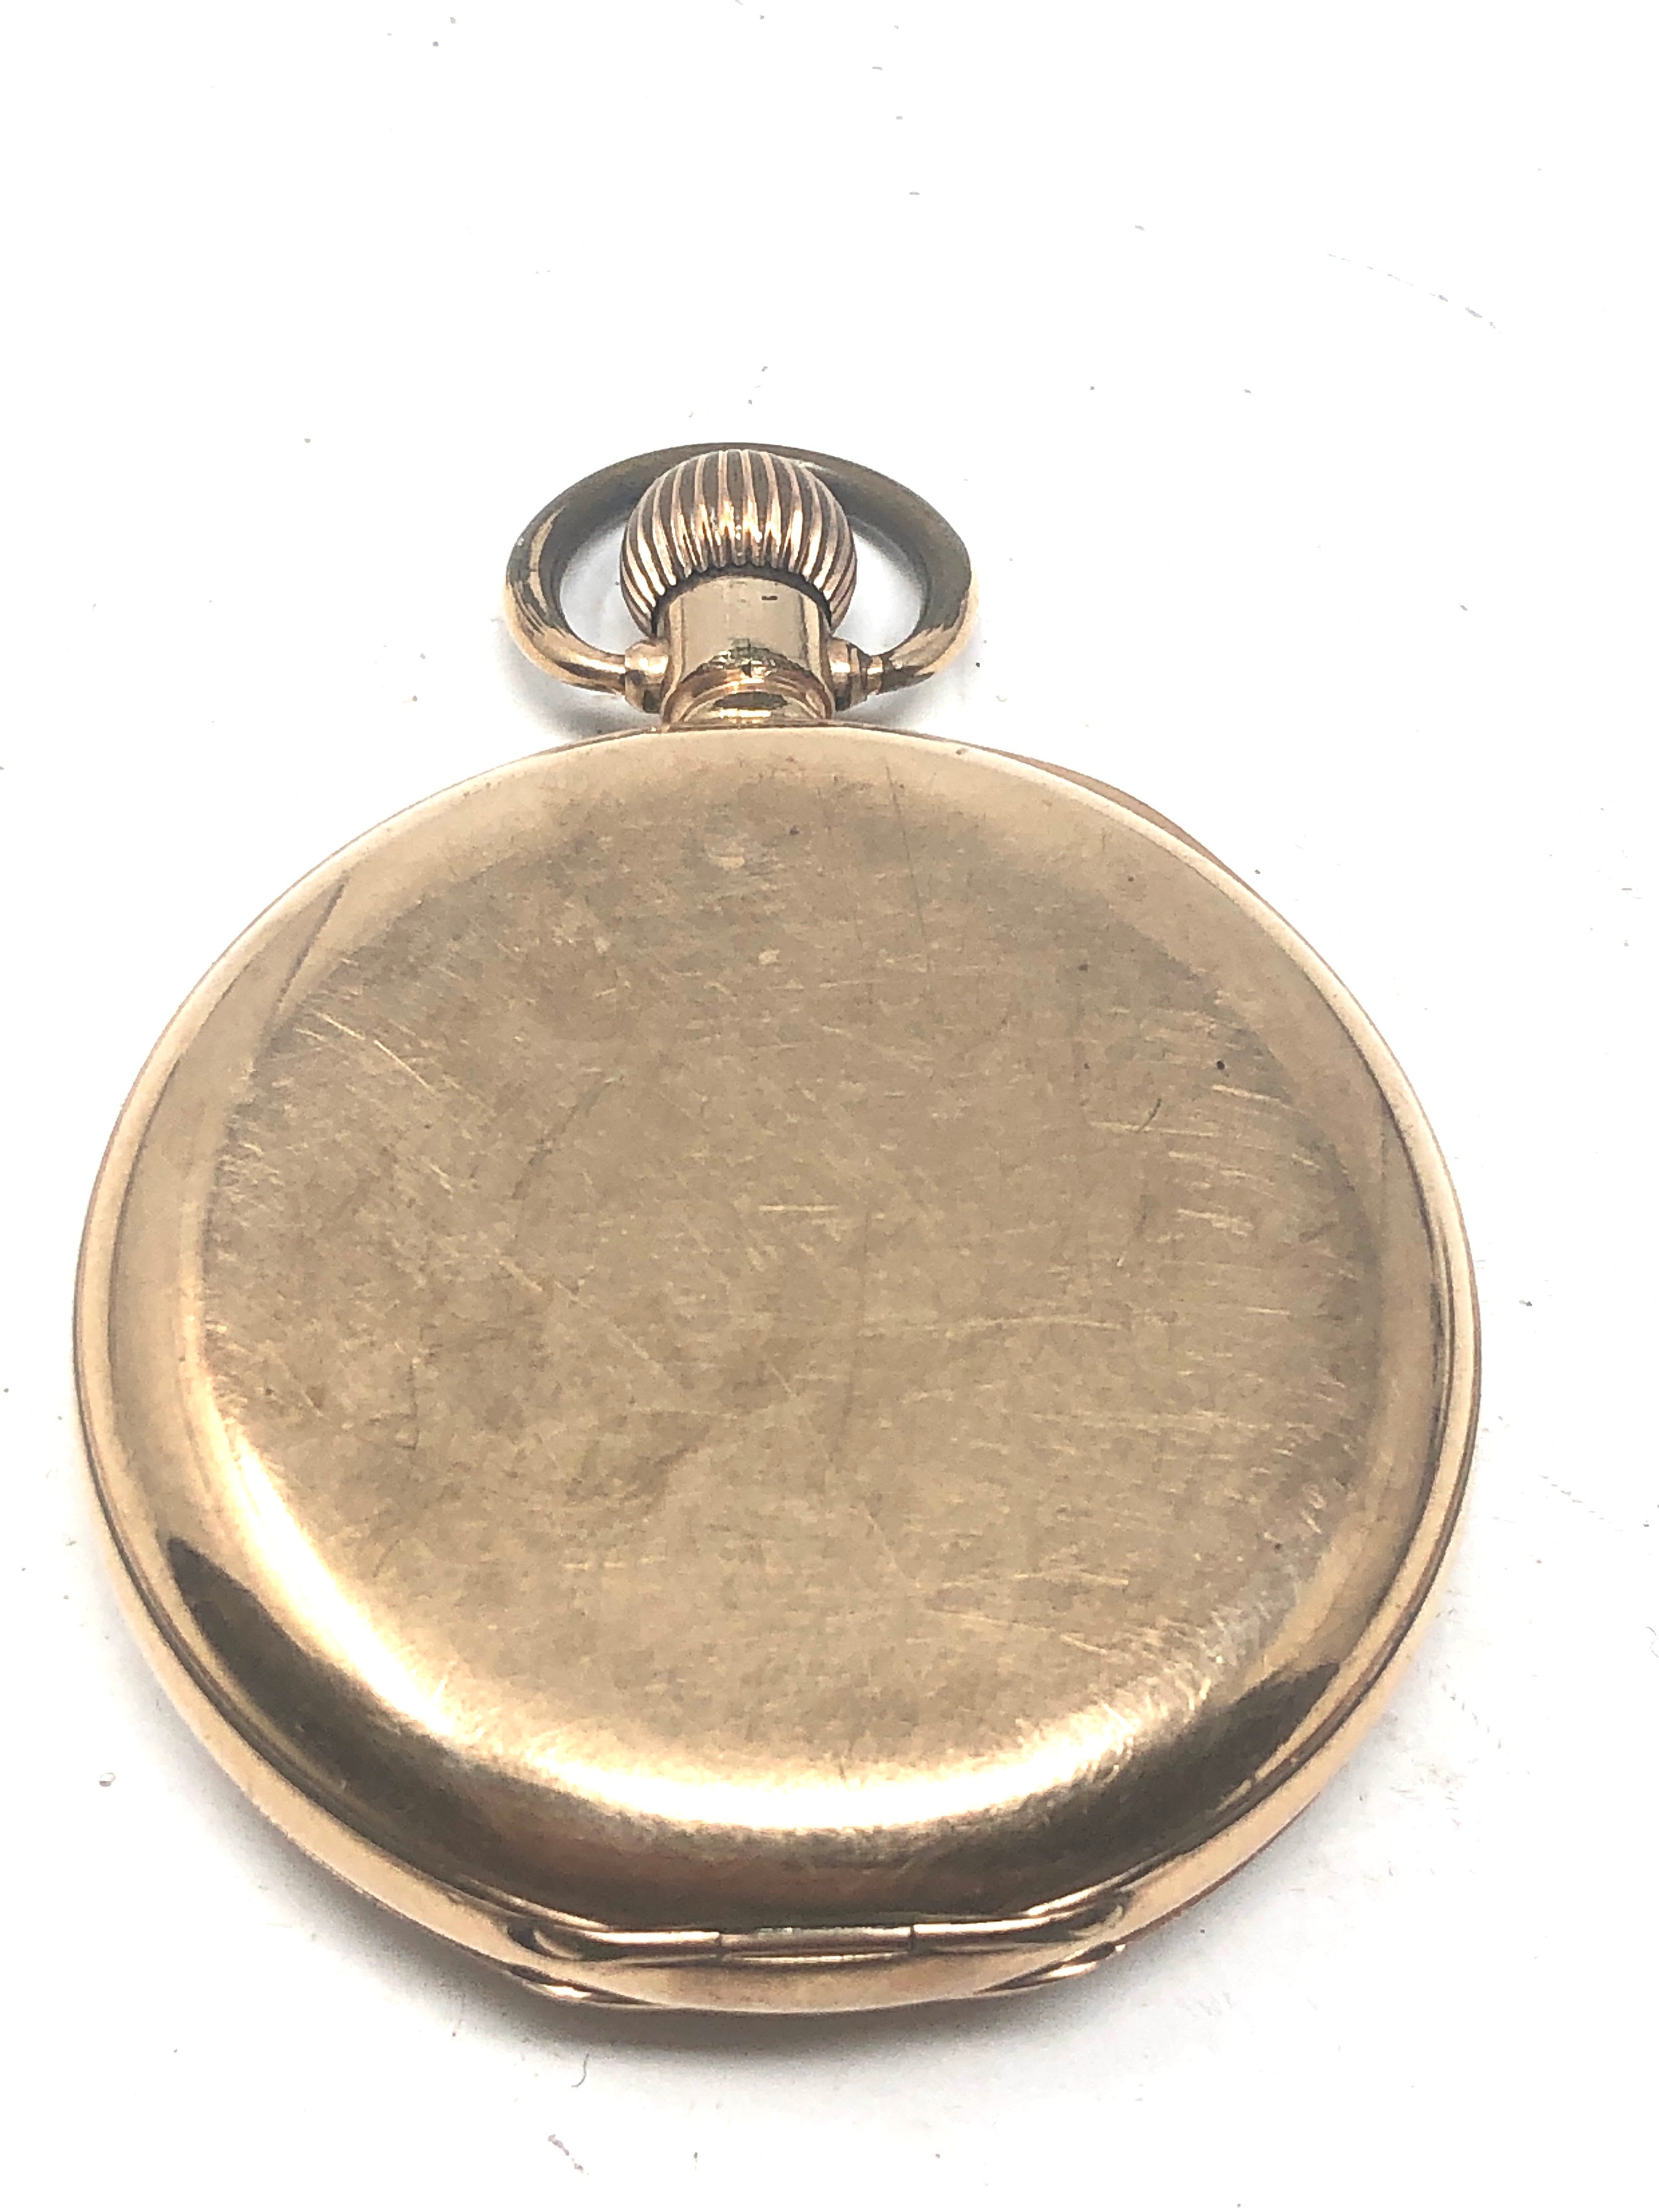 Gold plated half hunter waltham pocket watch the watch is ticking - Bild 2 aus 3